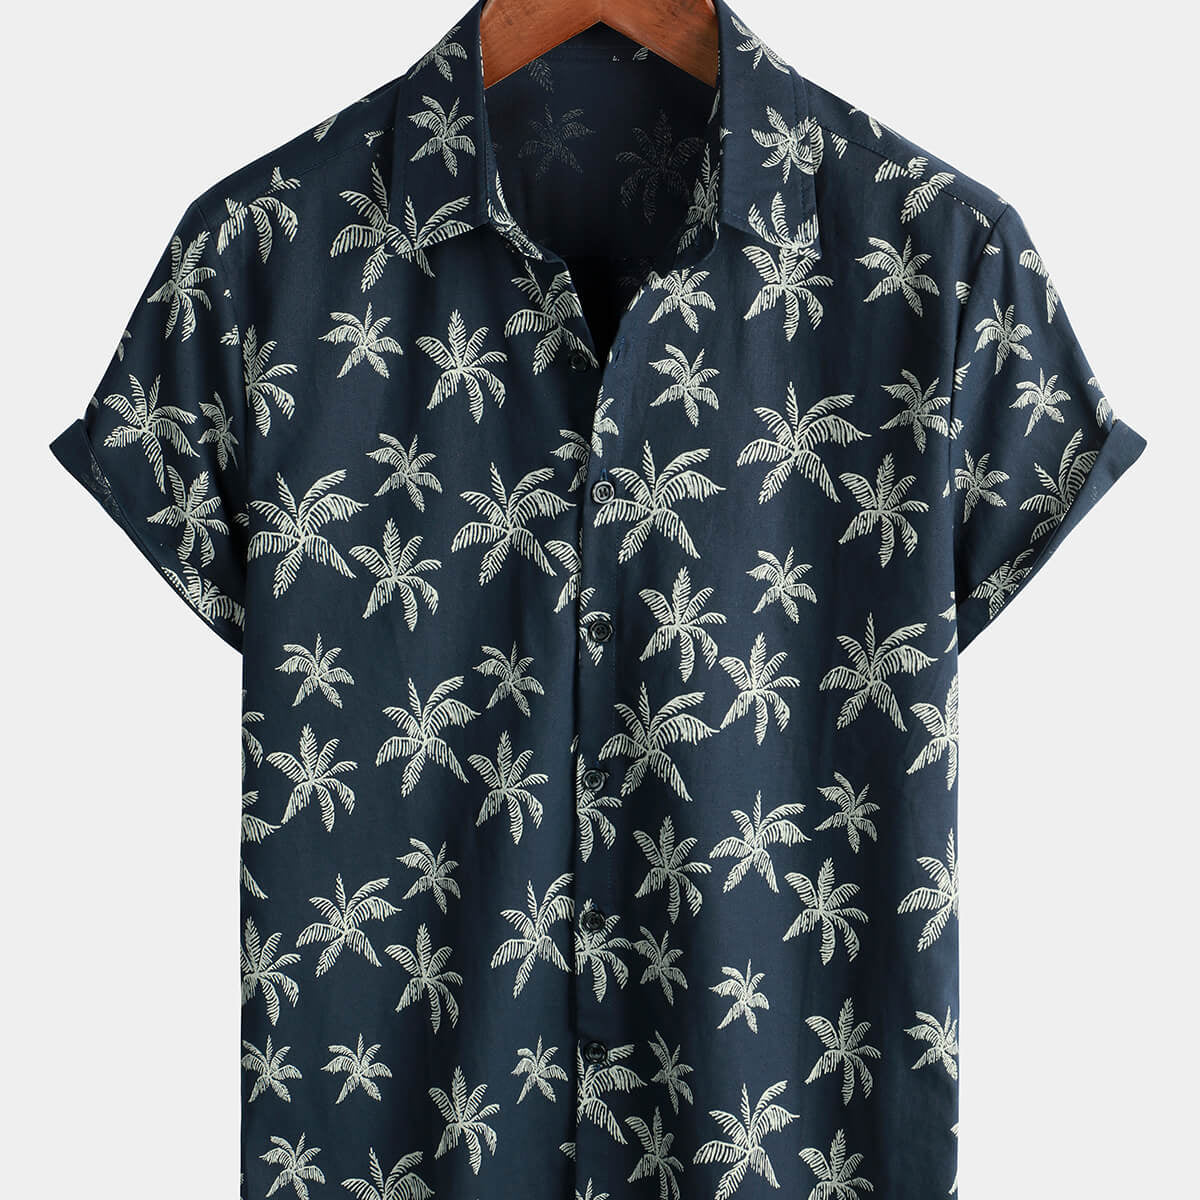 Camisa hawaiana de manga corta con botones azul marino de algodón con estampado de palmeras para hombre